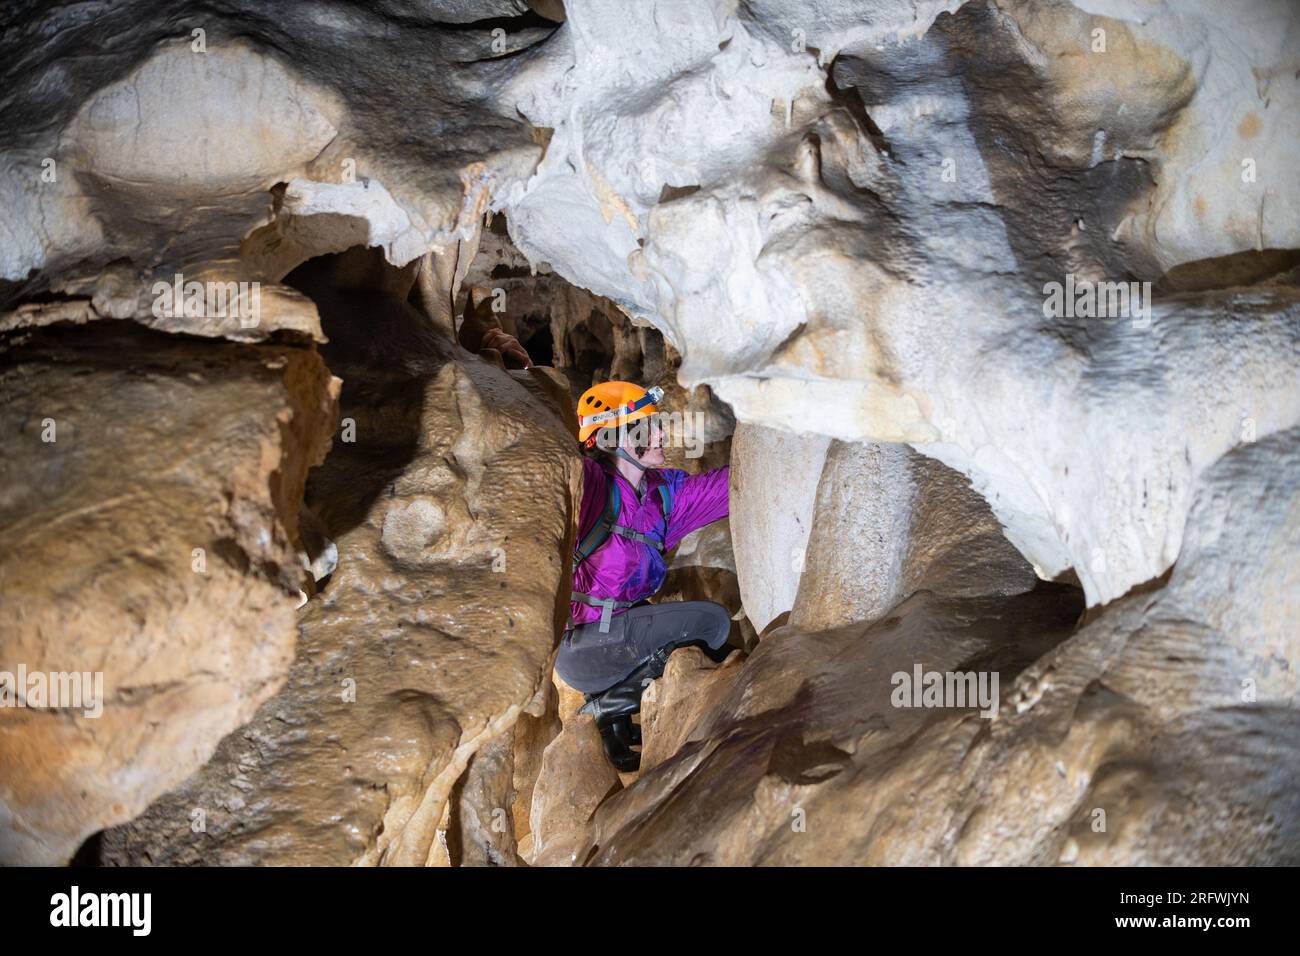 Jeune femme spelunking à l'intérieur d'une grotte. Concept féministe. Concept de sport féminin. Banque D'Images